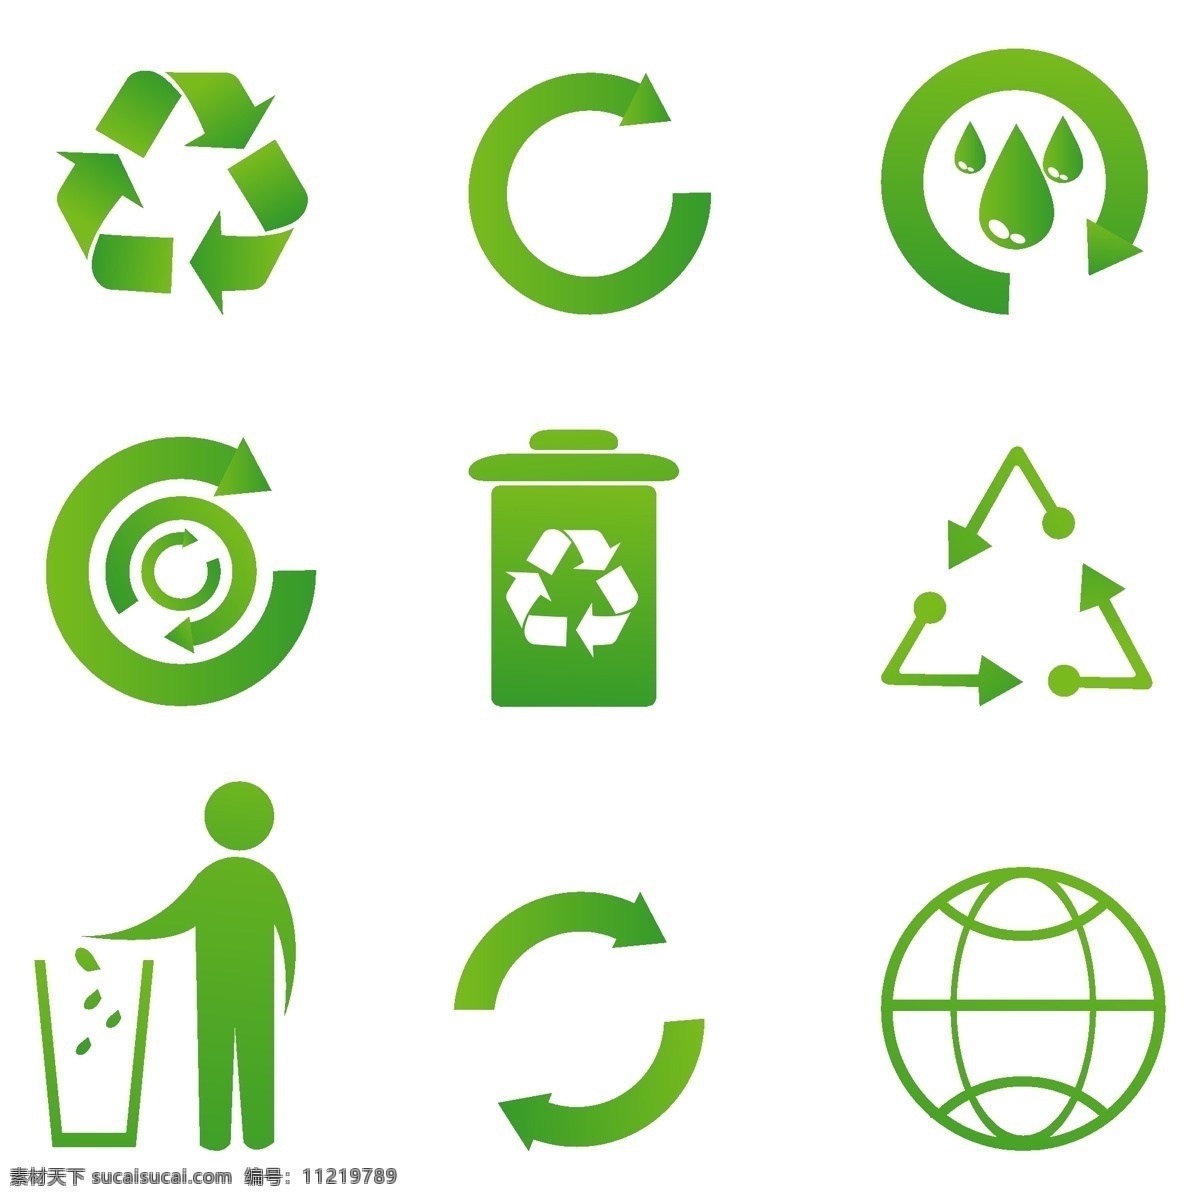 回收 回收站图标 图标 图标矢量回收 回收站 矢量 矢量图 符号 自由 全球 手绘 形状 绿色 其他矢量图